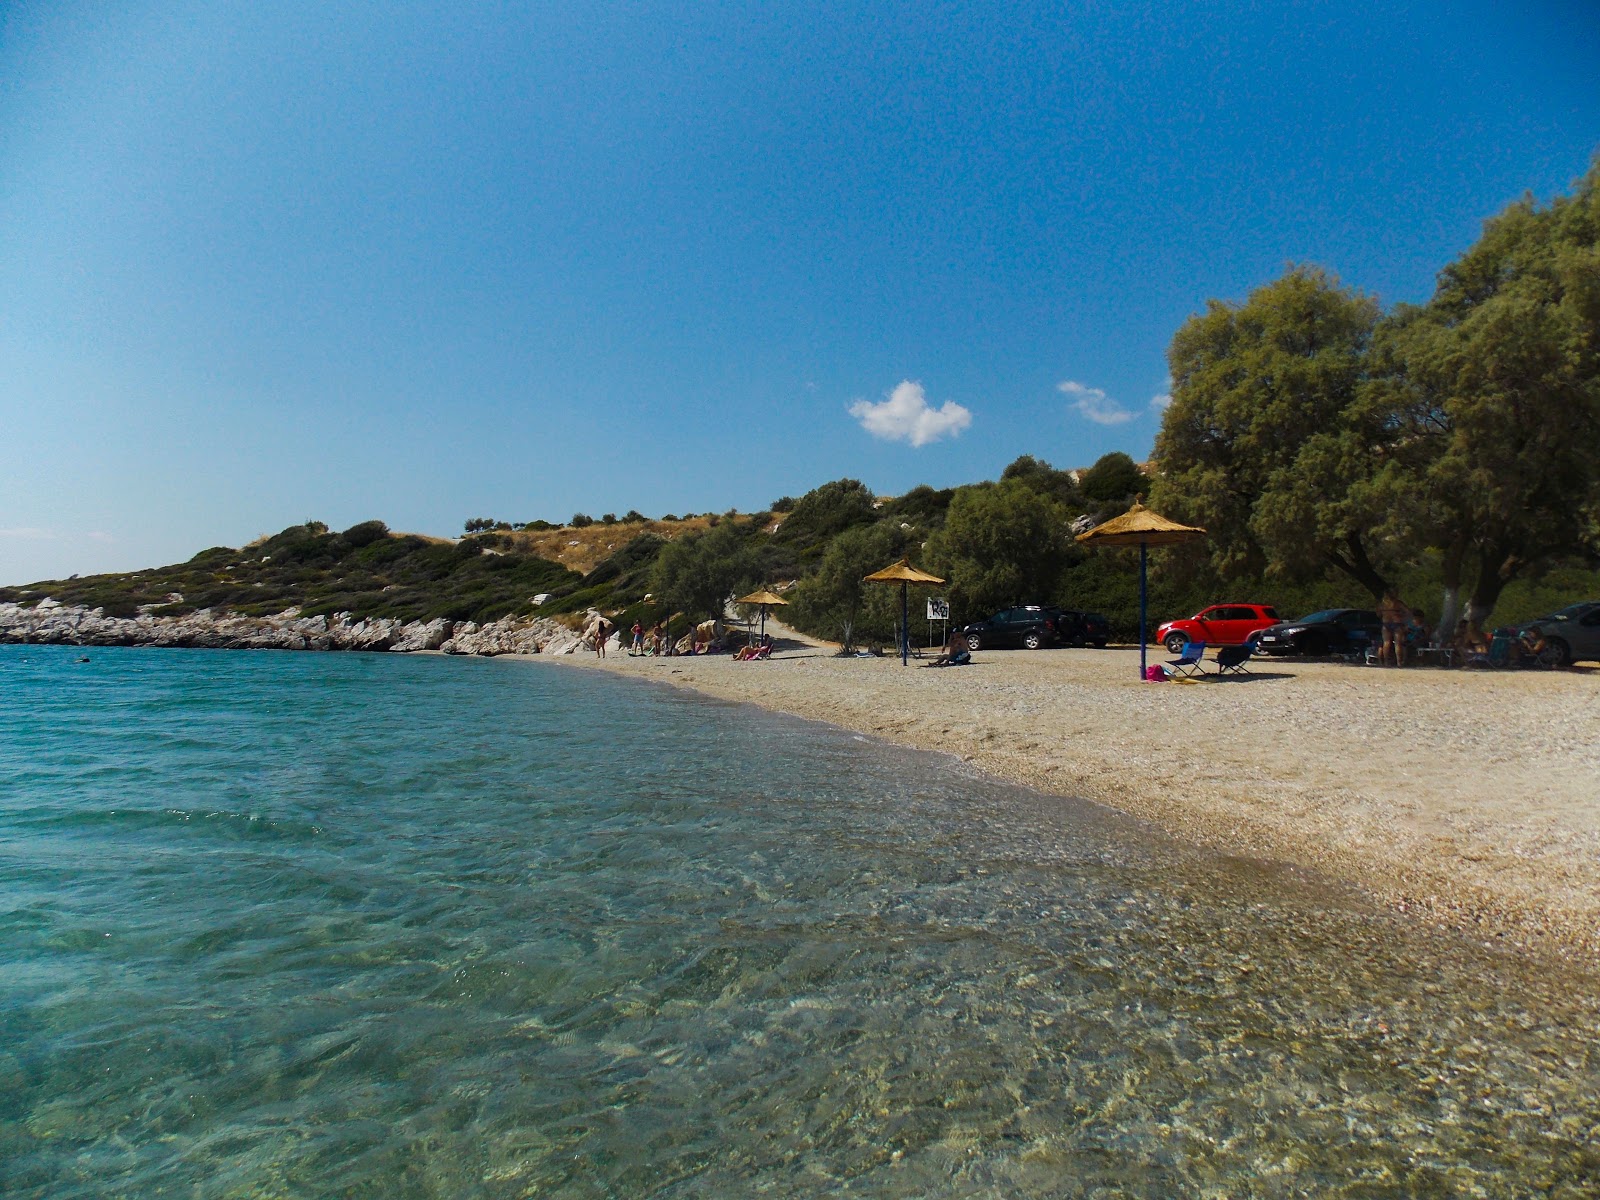 Valokuva Panagitsa beachista. sijaitsee luonnonalueella